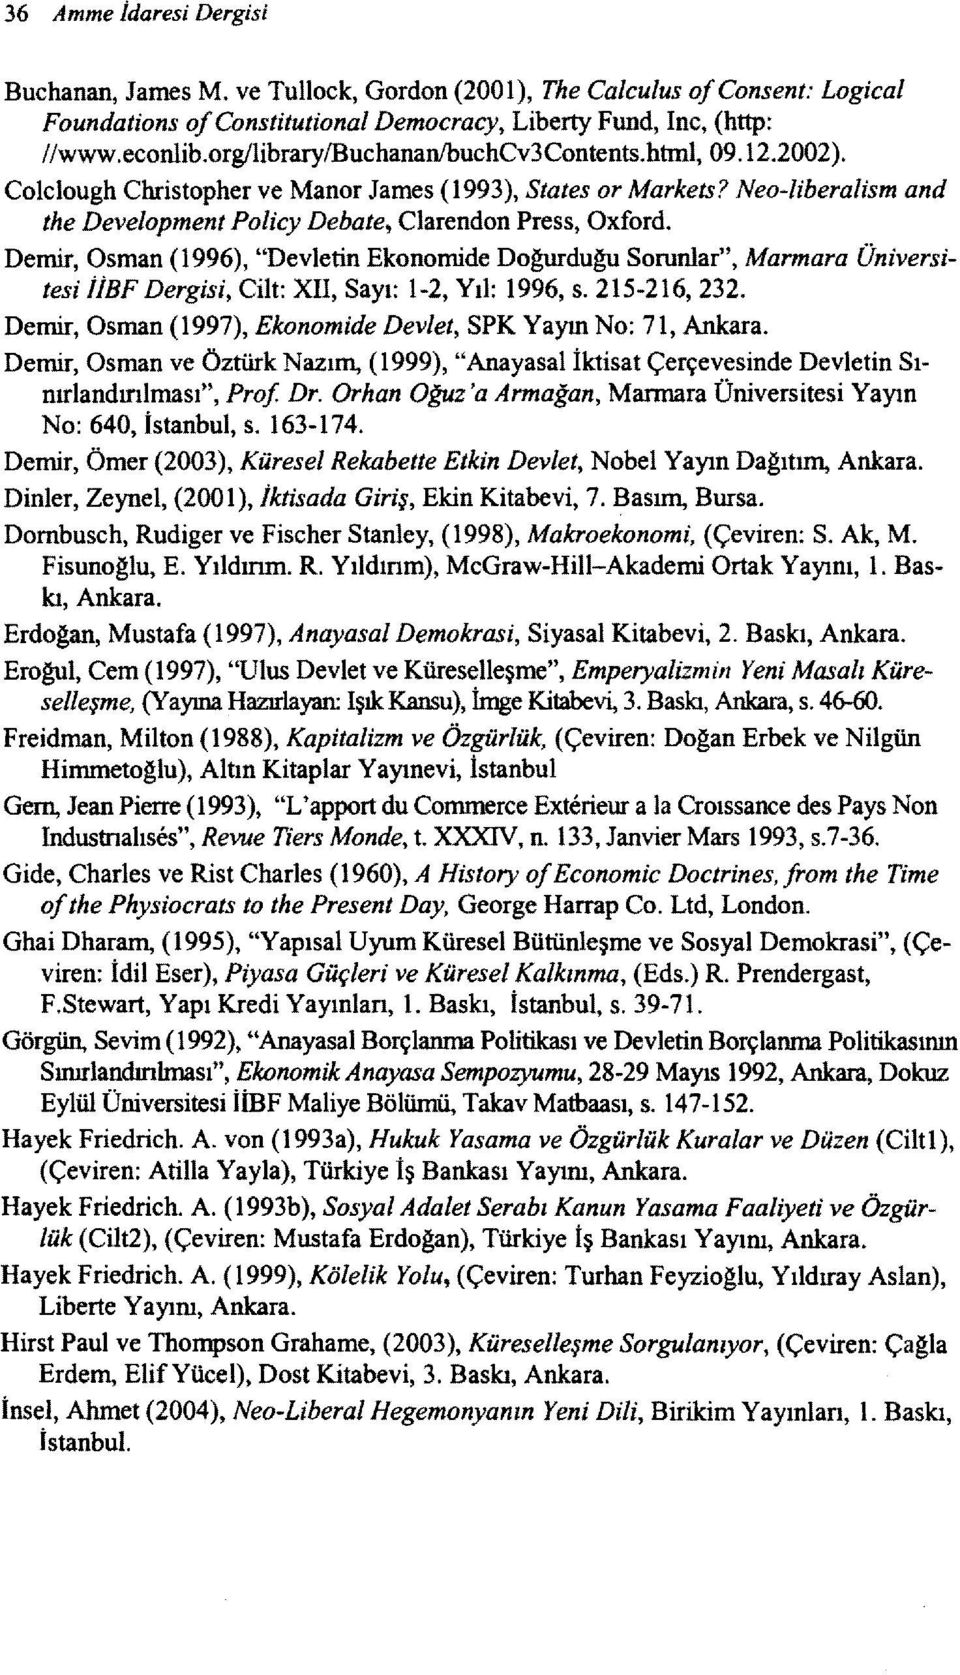 Demir, Osman (1996), "Devletin Ekonomide Dogurdugu Sorunlar", Marmara Üniversitesi İİBF Dergisi, Cilt: XII, Sayı: 1-2, Yıl: 1996, s. 215-216,232.